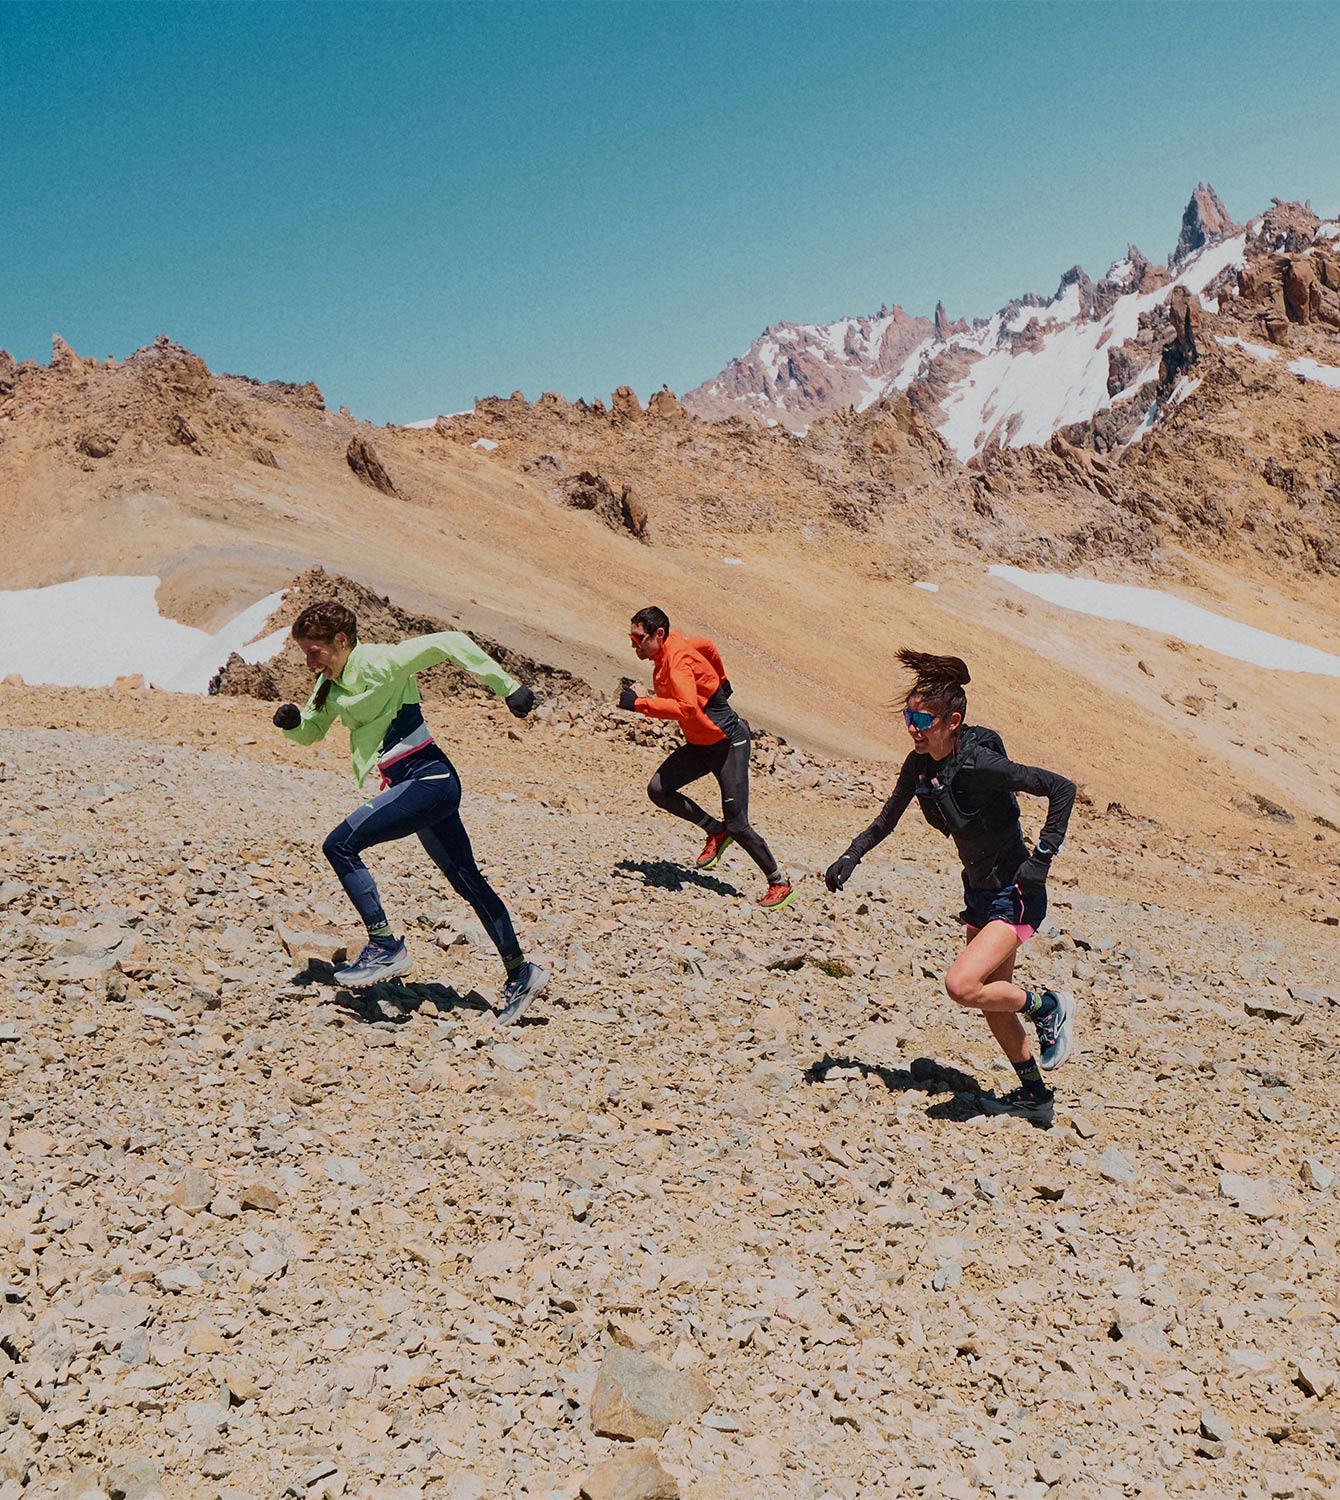 Halbnahaufnahme einer Gruppe von Trail Runnern mit Brooks Running Trailausrüstung beim Erklimmen eines Berges